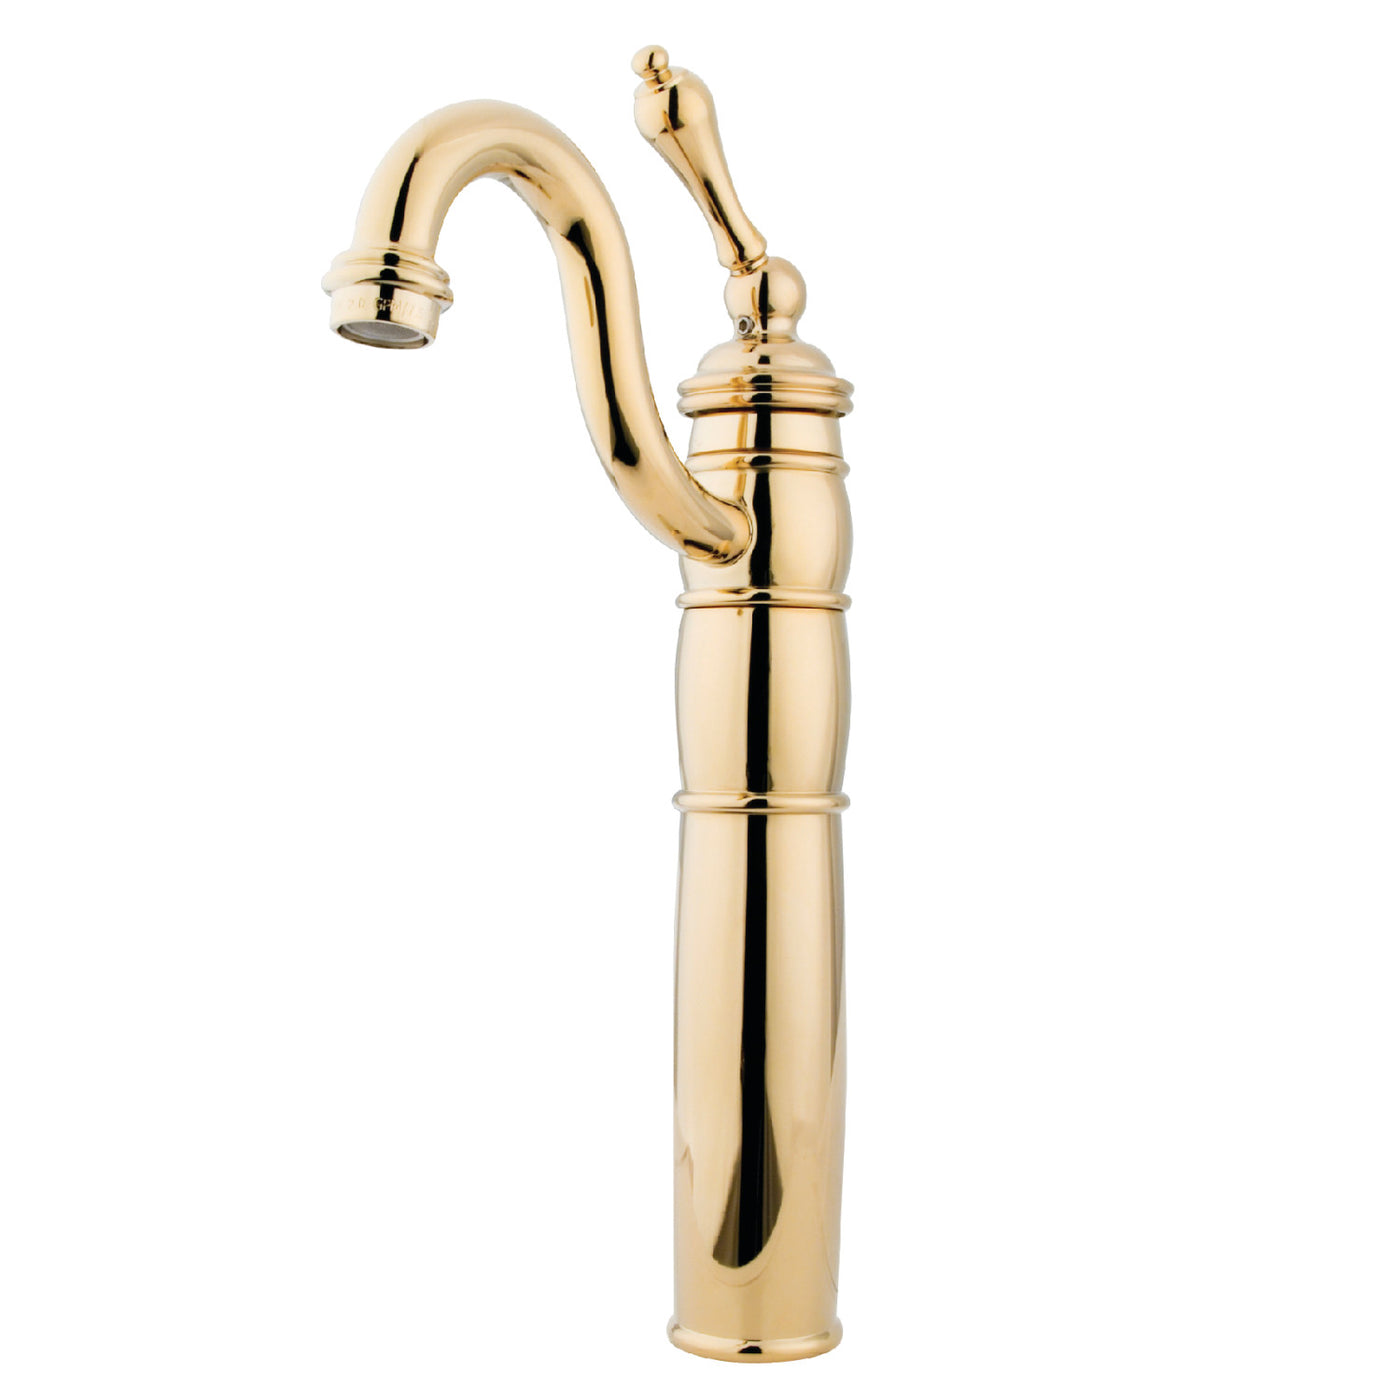 Elements of Design EB1422AL Vessel Sink Faucet, Polished Brass